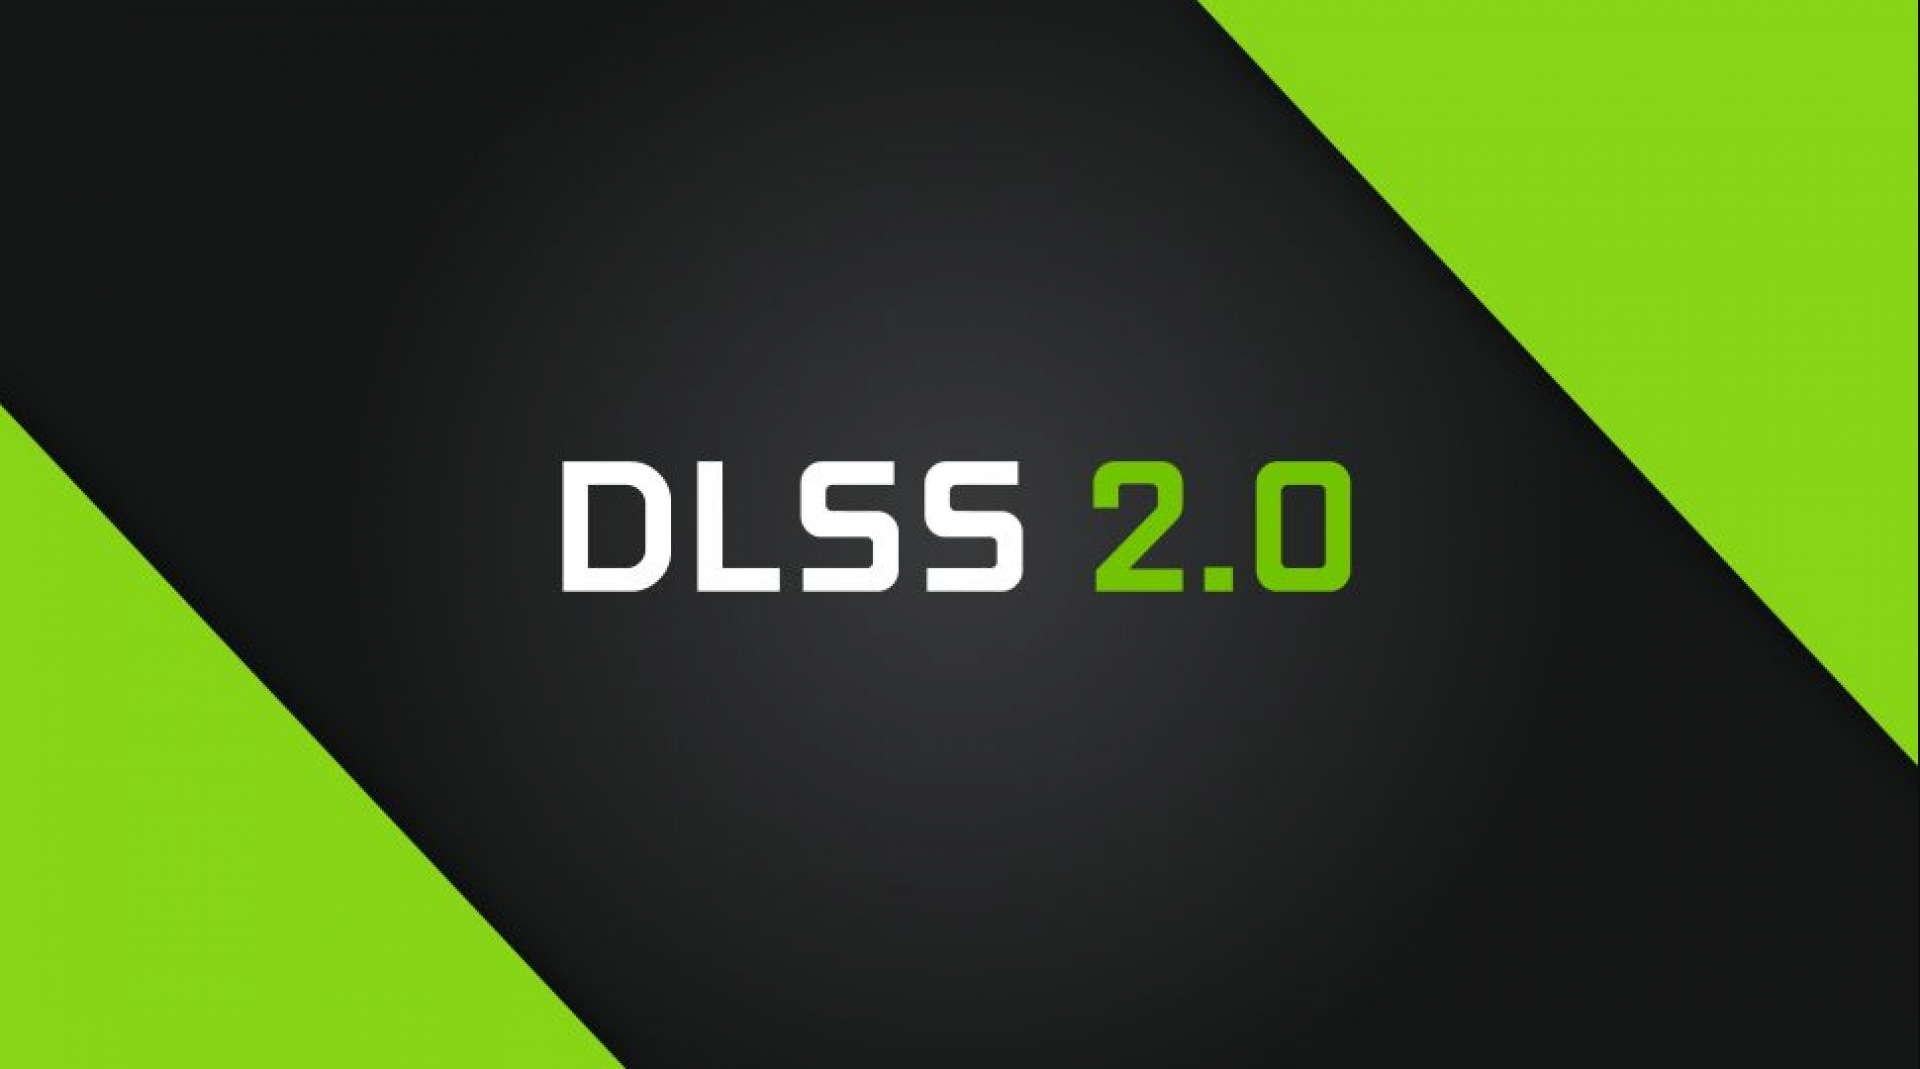 تکنولوژی DLSS شرکت NVIDIA چیست و چه کارایی دارد